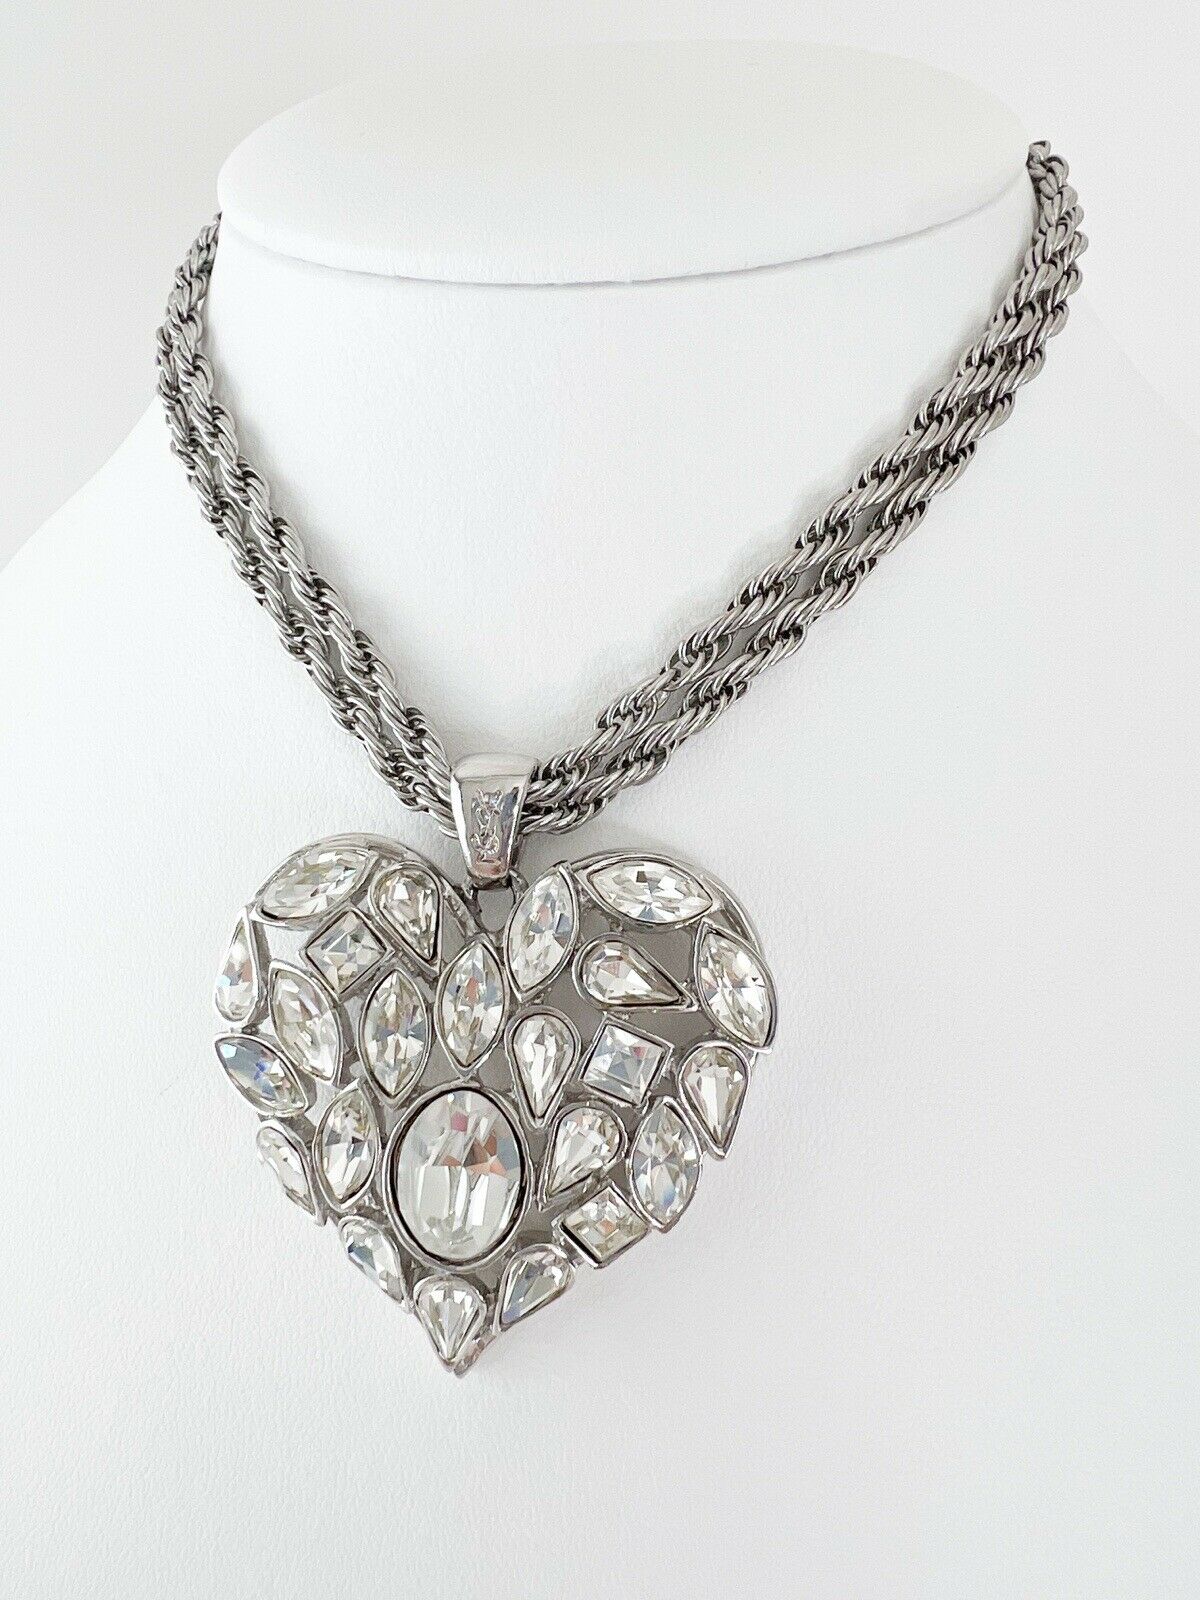 Yves Saint-Laurent Heart Chain Necklace Pendant - Chelsea Vintage Couture